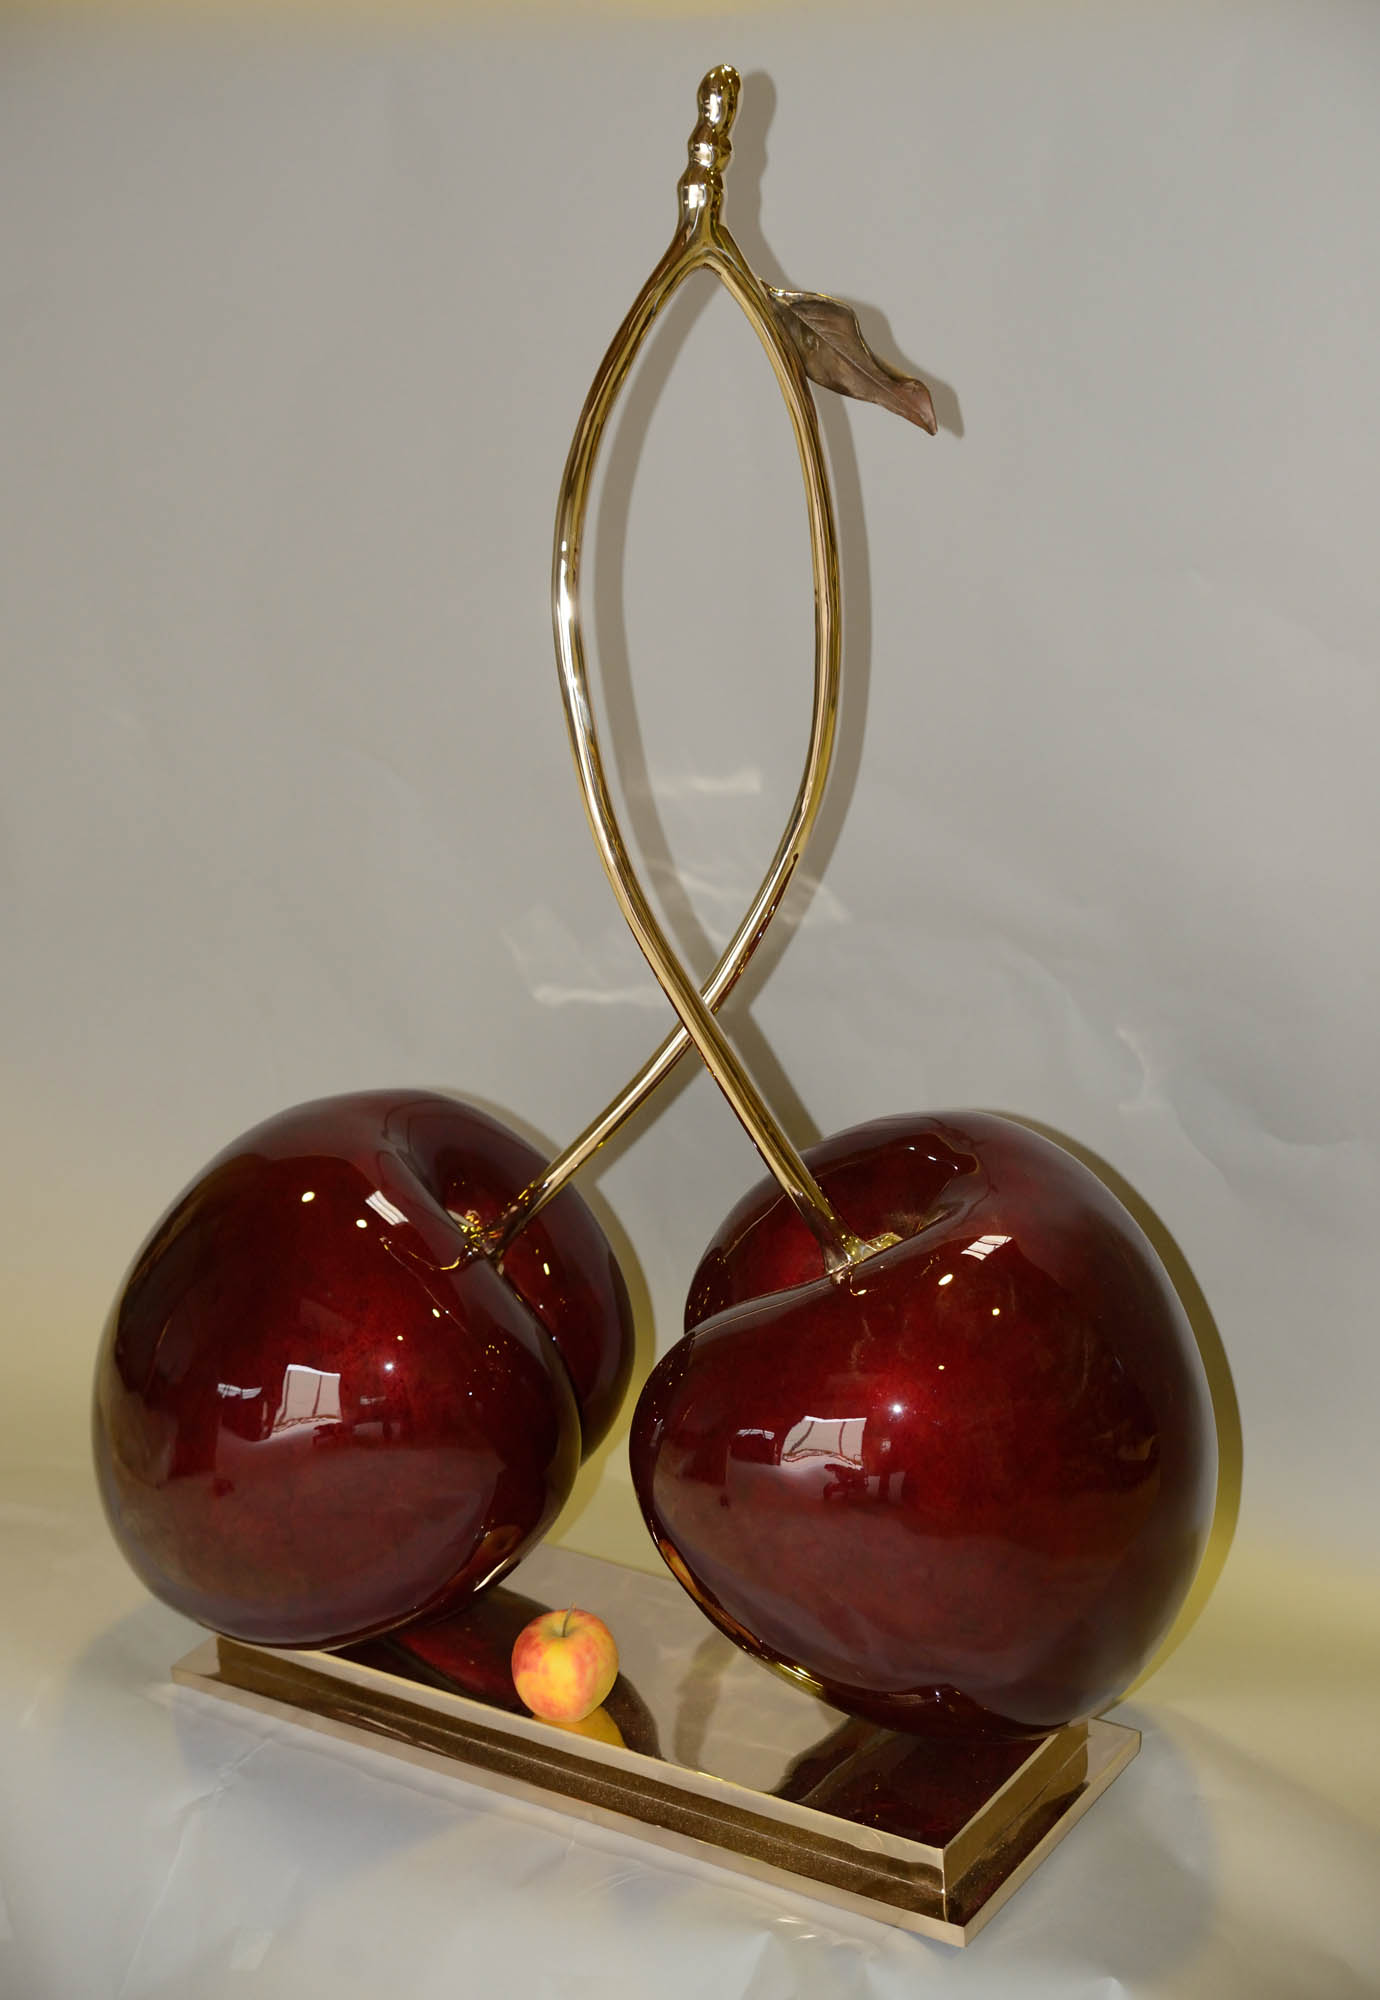 fruit-cherries-desire-3